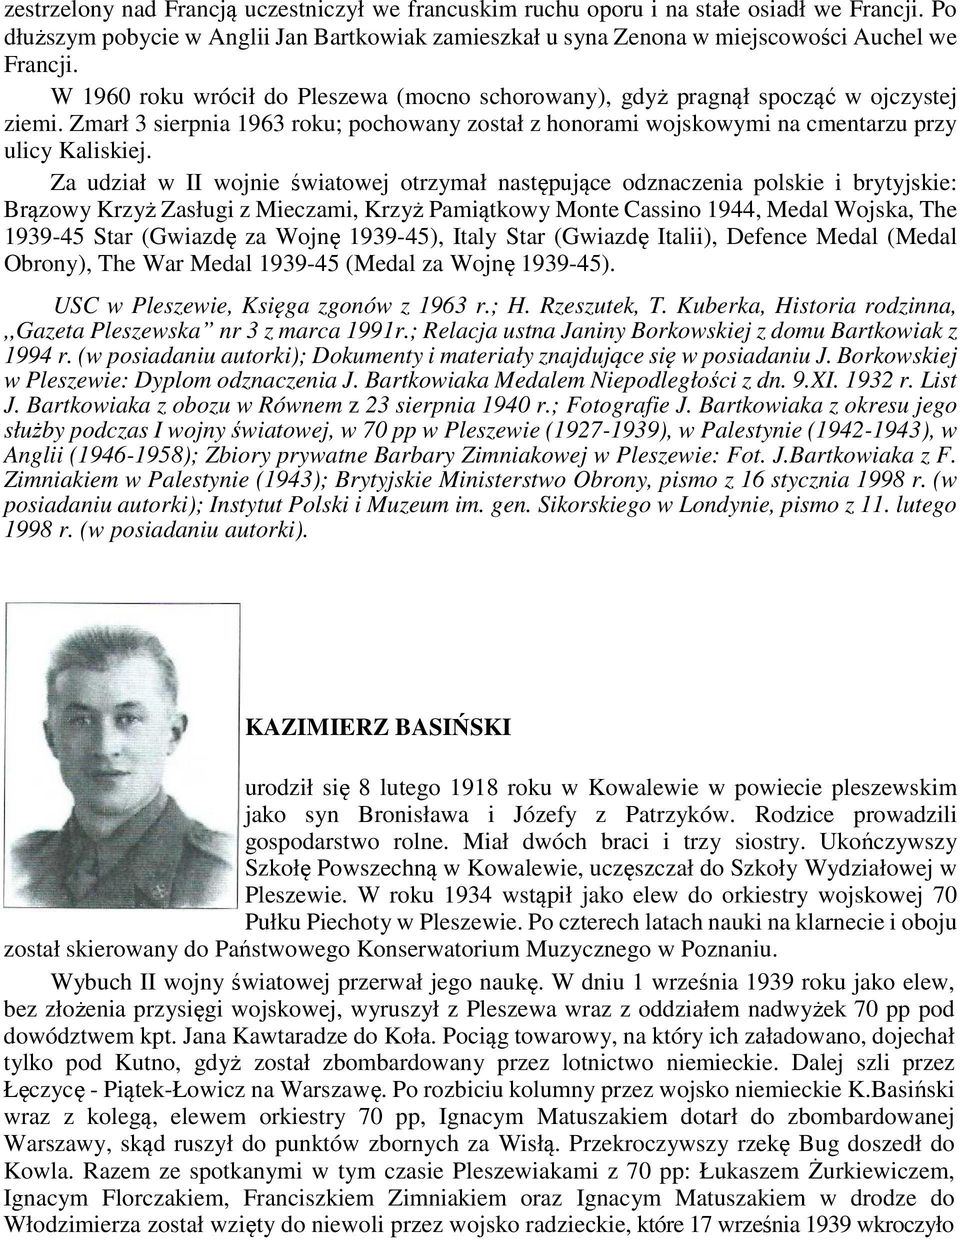 Za udział w II wojnie światowej otrzymał następujące odznaczenia polskie i brytyjskie: Brązowy Krzyż Zasługi z Mieczami, Krzyż Pamiątkowy Monte Cassino 1944, Medal Wojska, The 1939-45 Star (Gwiazdę